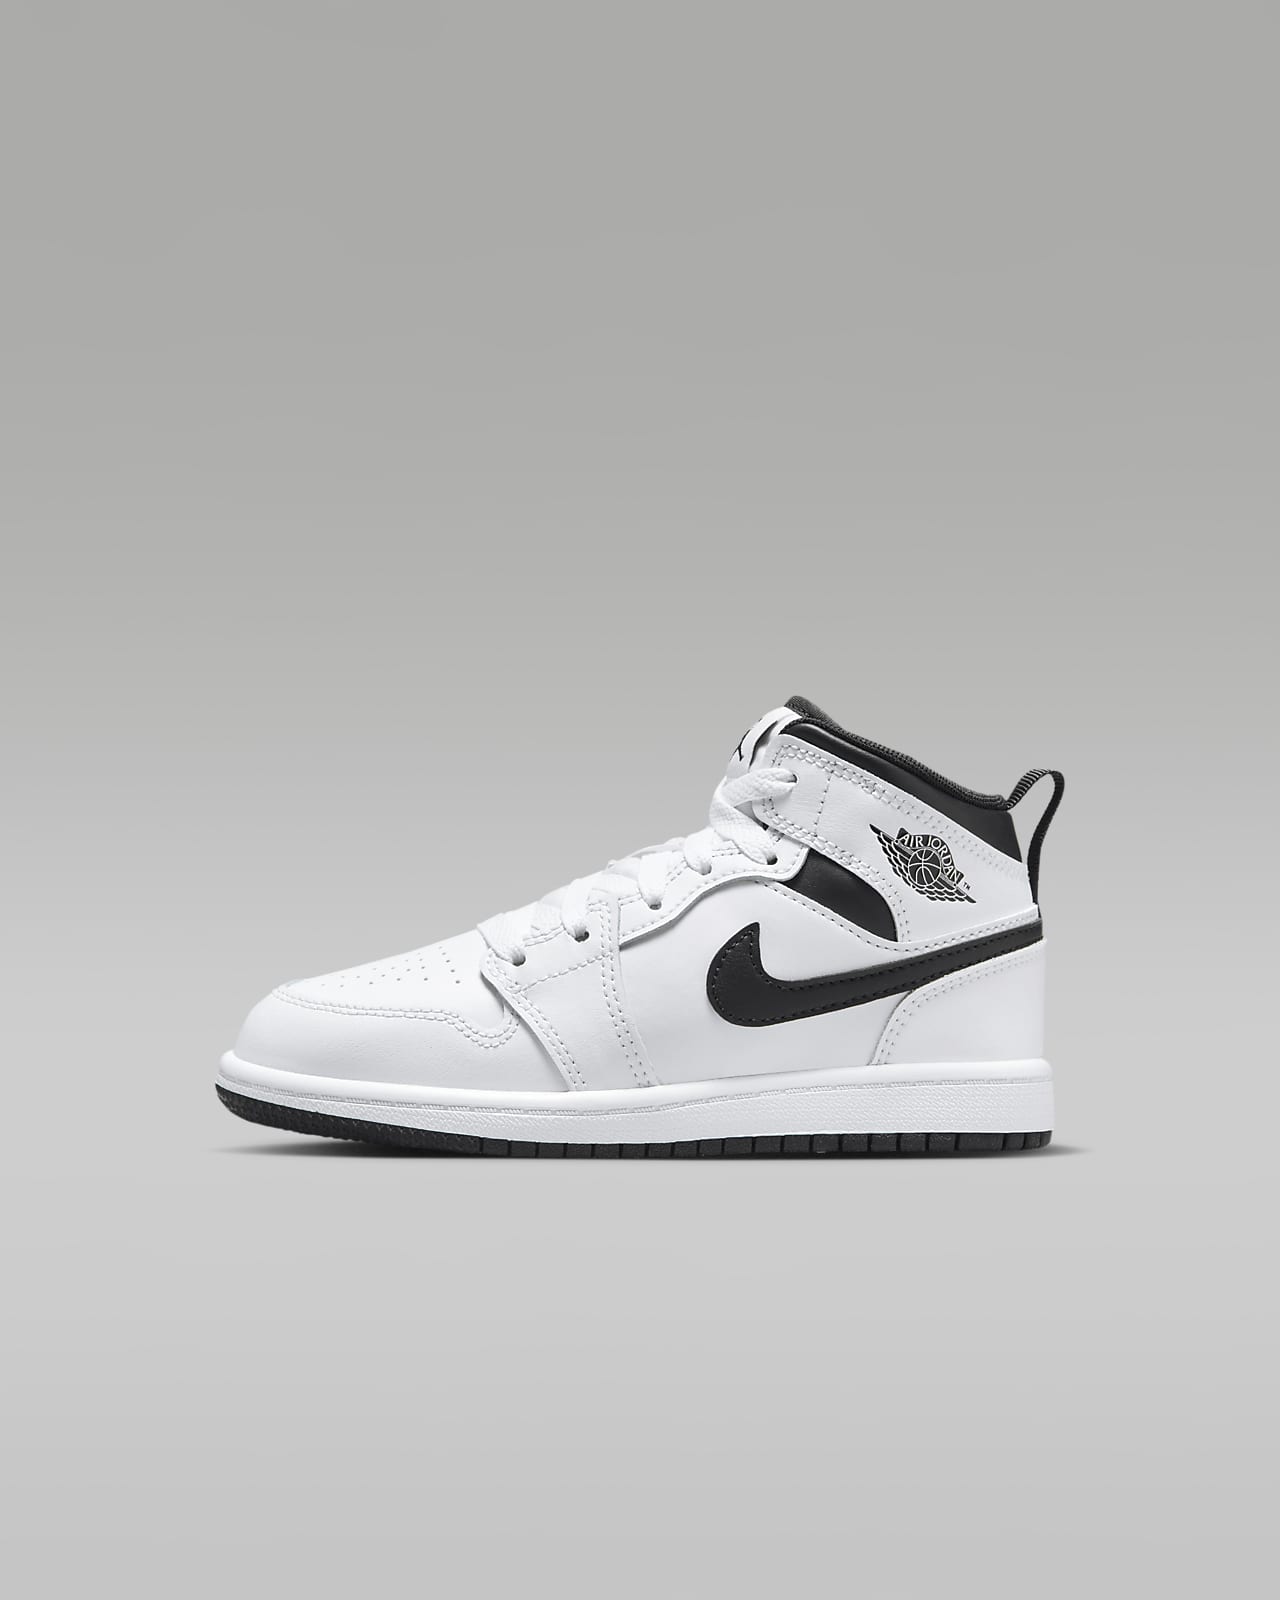 Jordan 1 Retro High OG Zapatillas - Niño/a pequeño/a. Nike ES